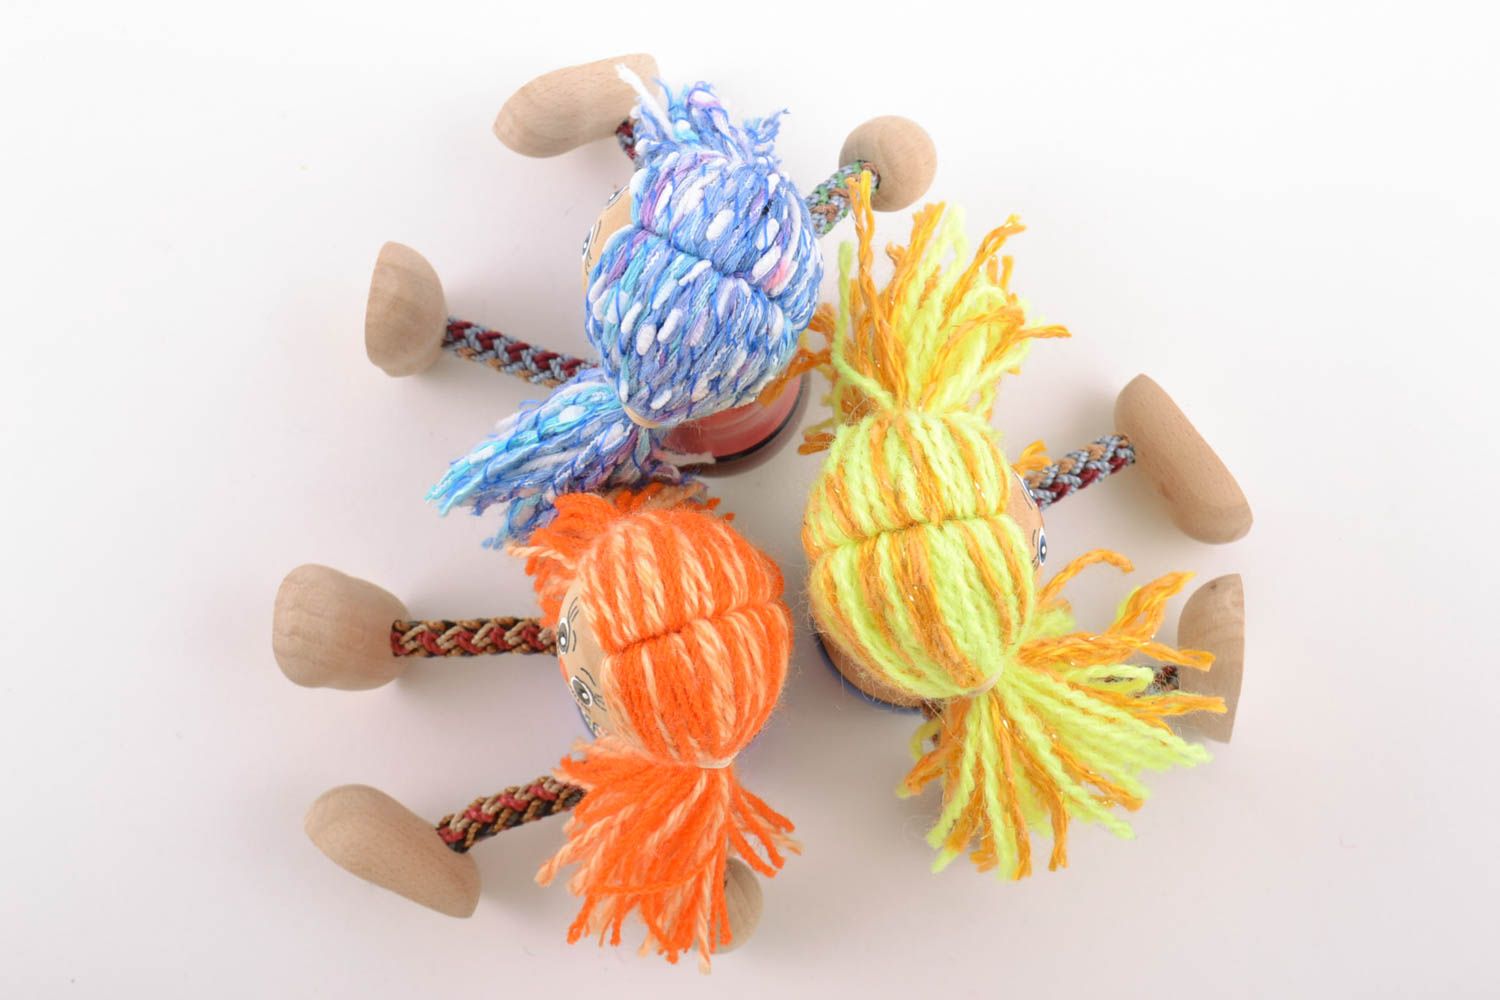 Деревянные эко игрушки подружки 3 штуки расписанные красками ручной работы фото 2